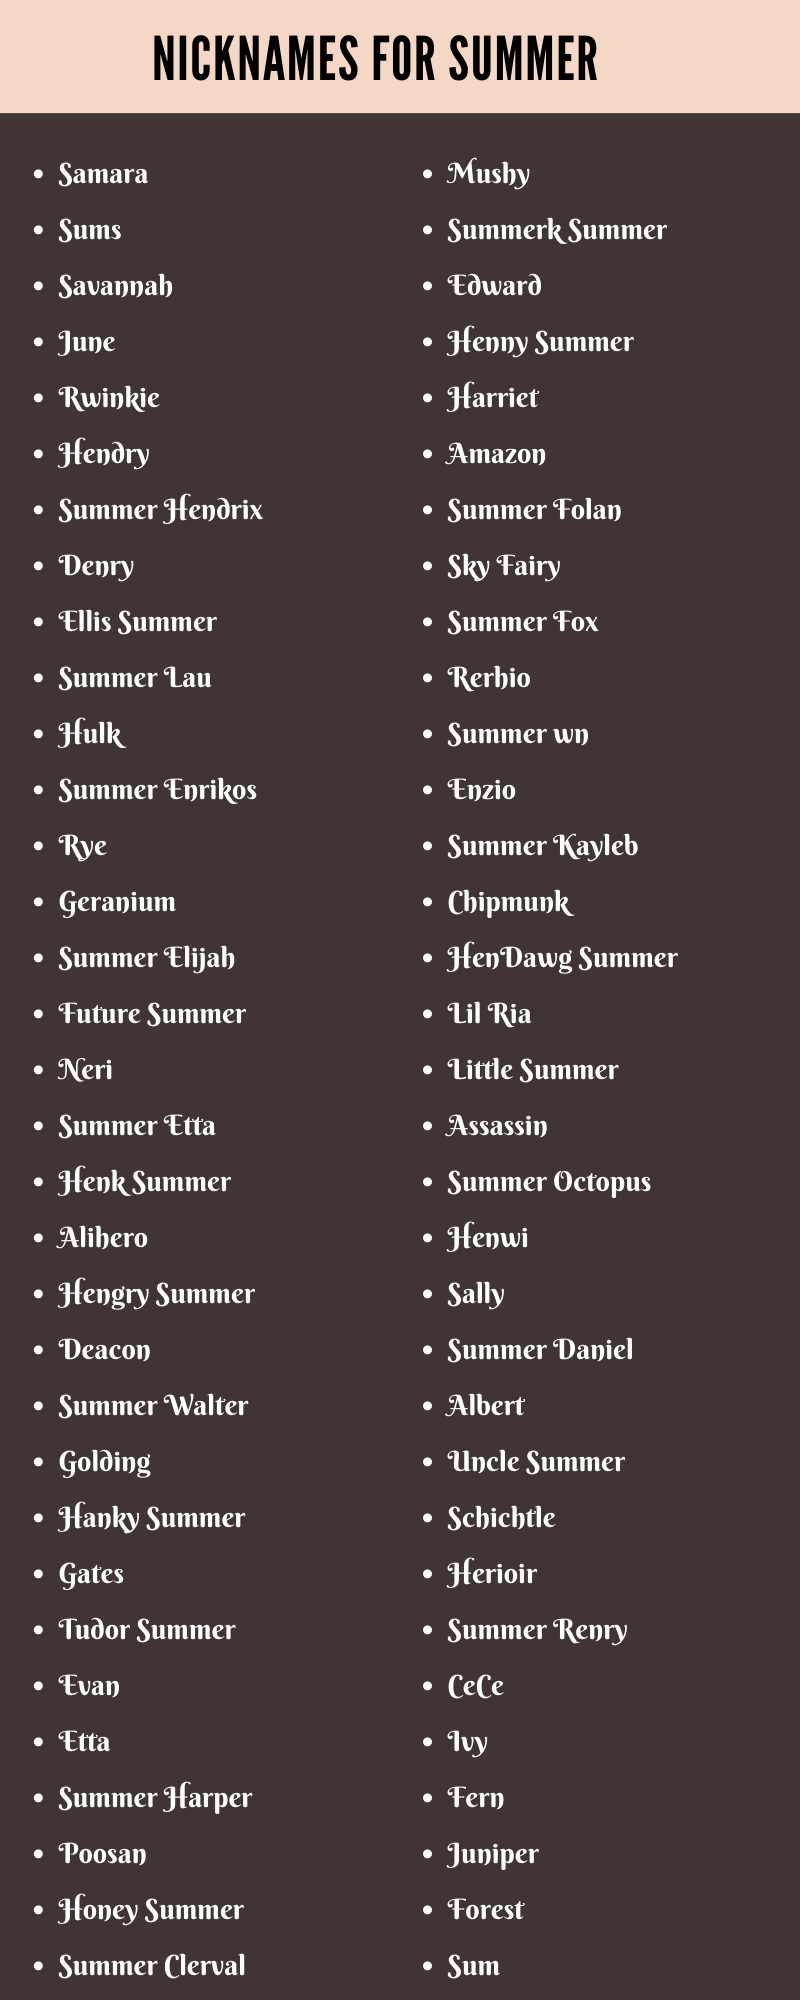 Nicknames For Summer